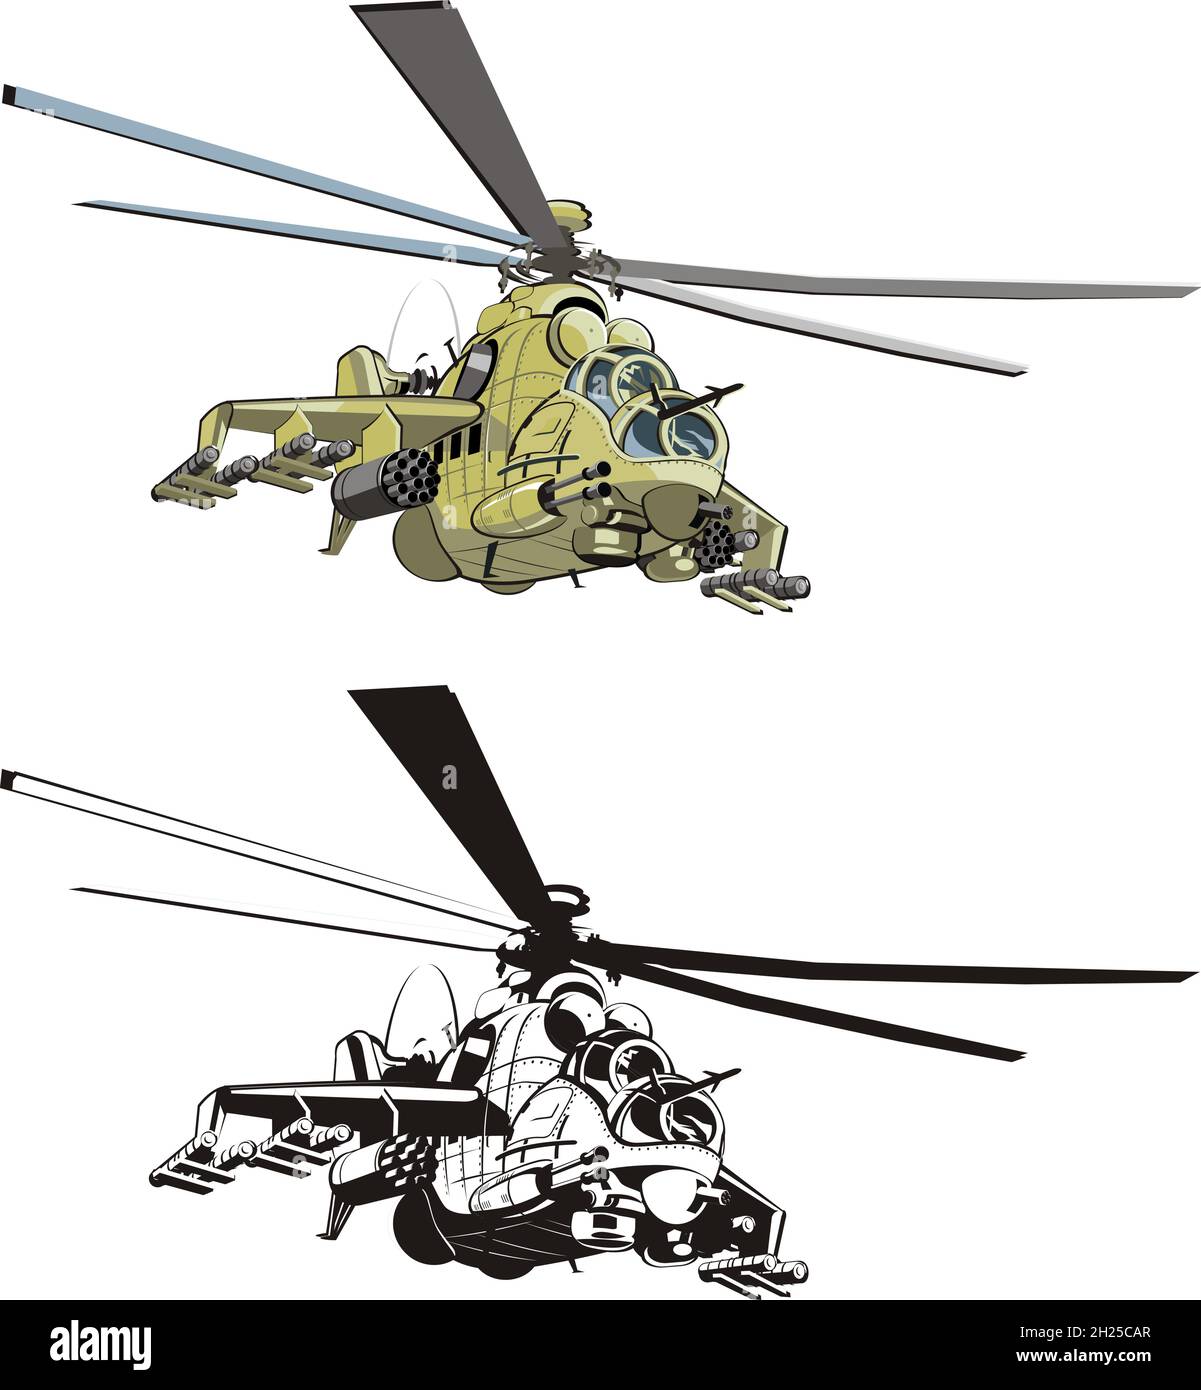 hélicoptère de grève russe de dessin animé.Format vectoriel EPS-8 disponible, séparé par des groupes et des calques, pour un montage facile Illustration de Vecteur